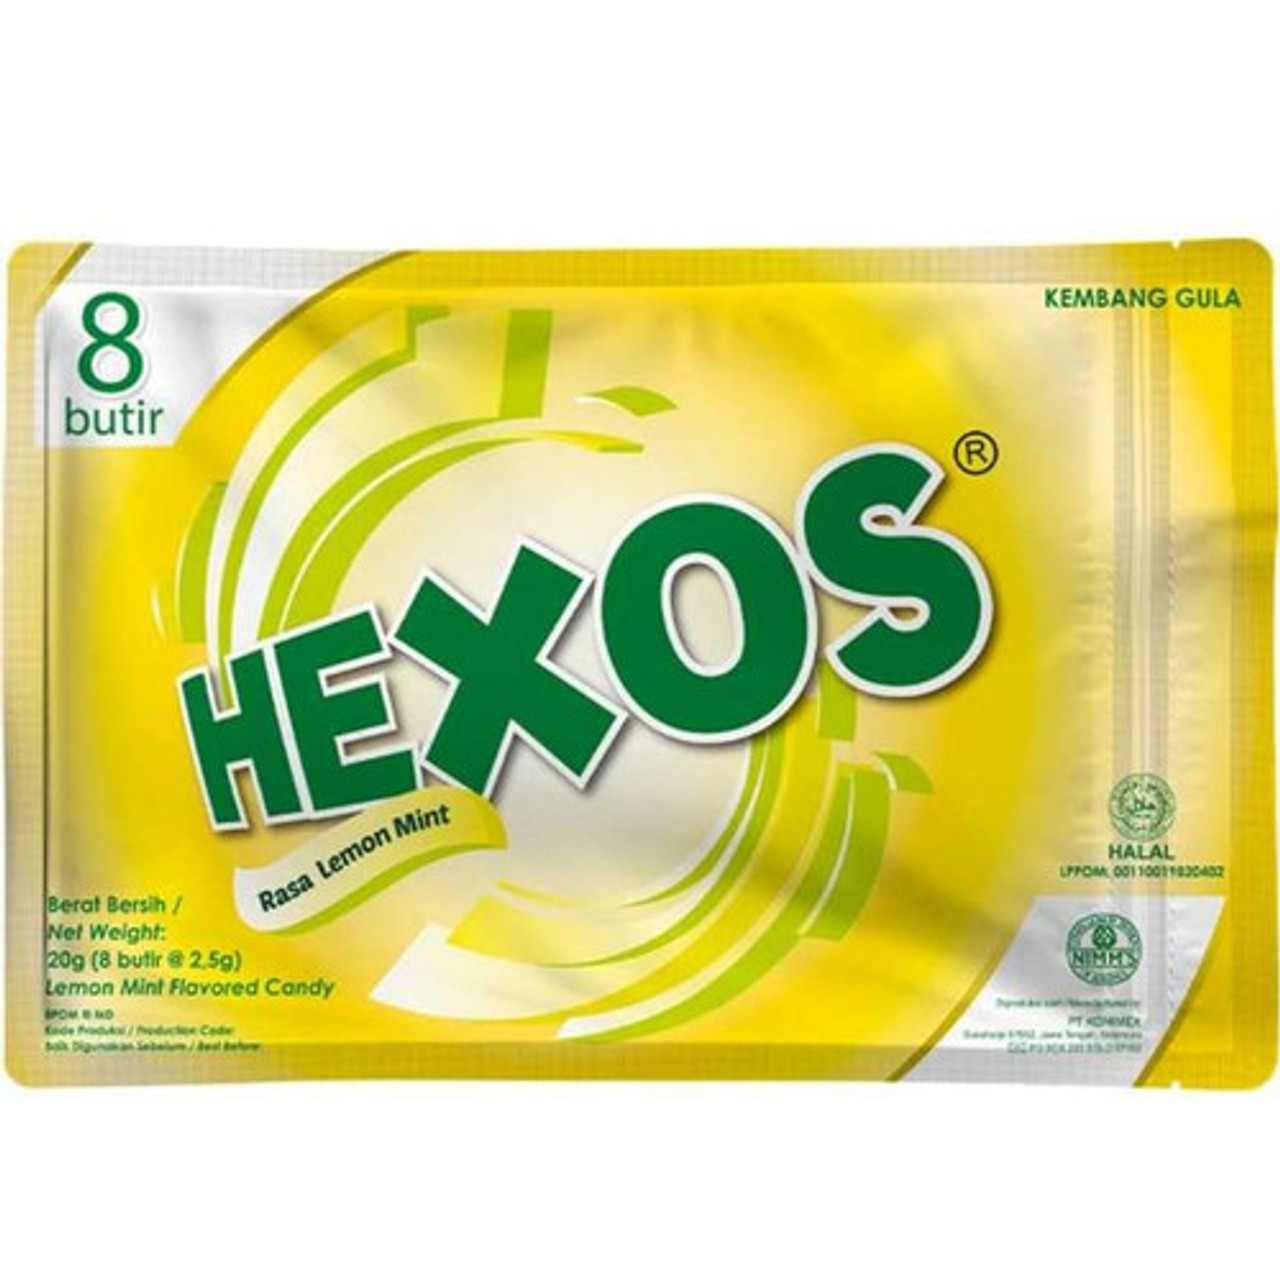 Hexos Candy Lemon Mint, 20gr (8 butir X2.5 gr)